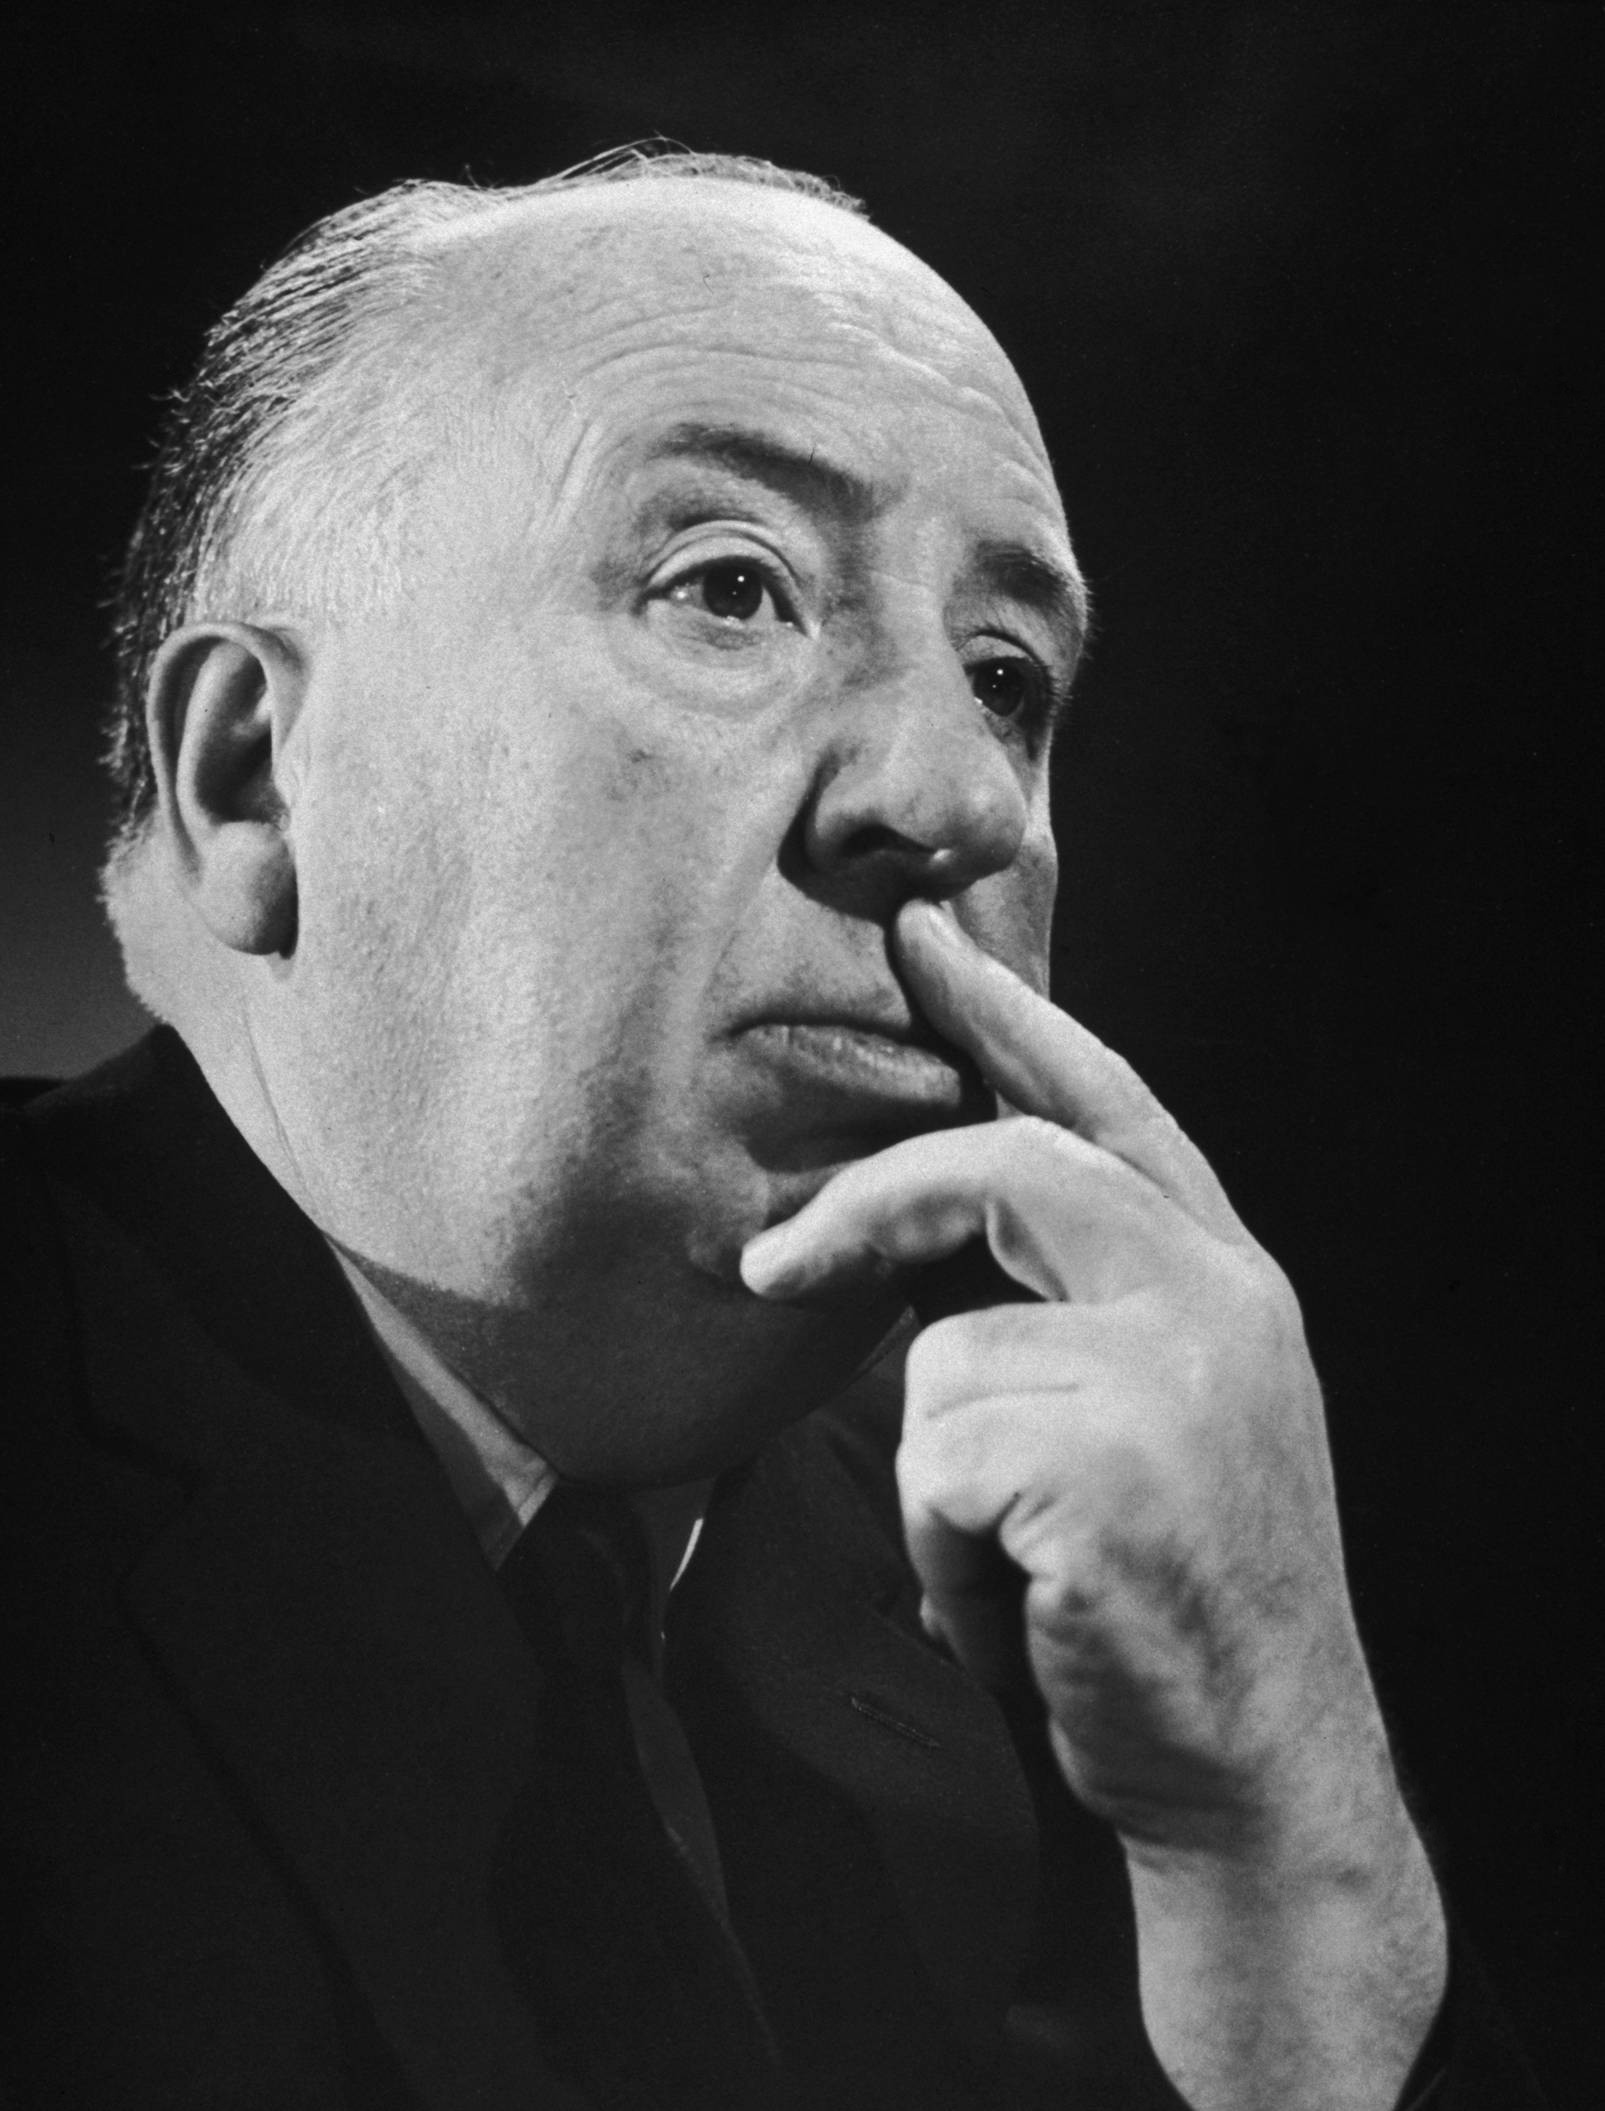 Men Film Directors Alfred Hitchcock Monochrome Portrait Suits Black Background Portrait Display Face 1605x2111